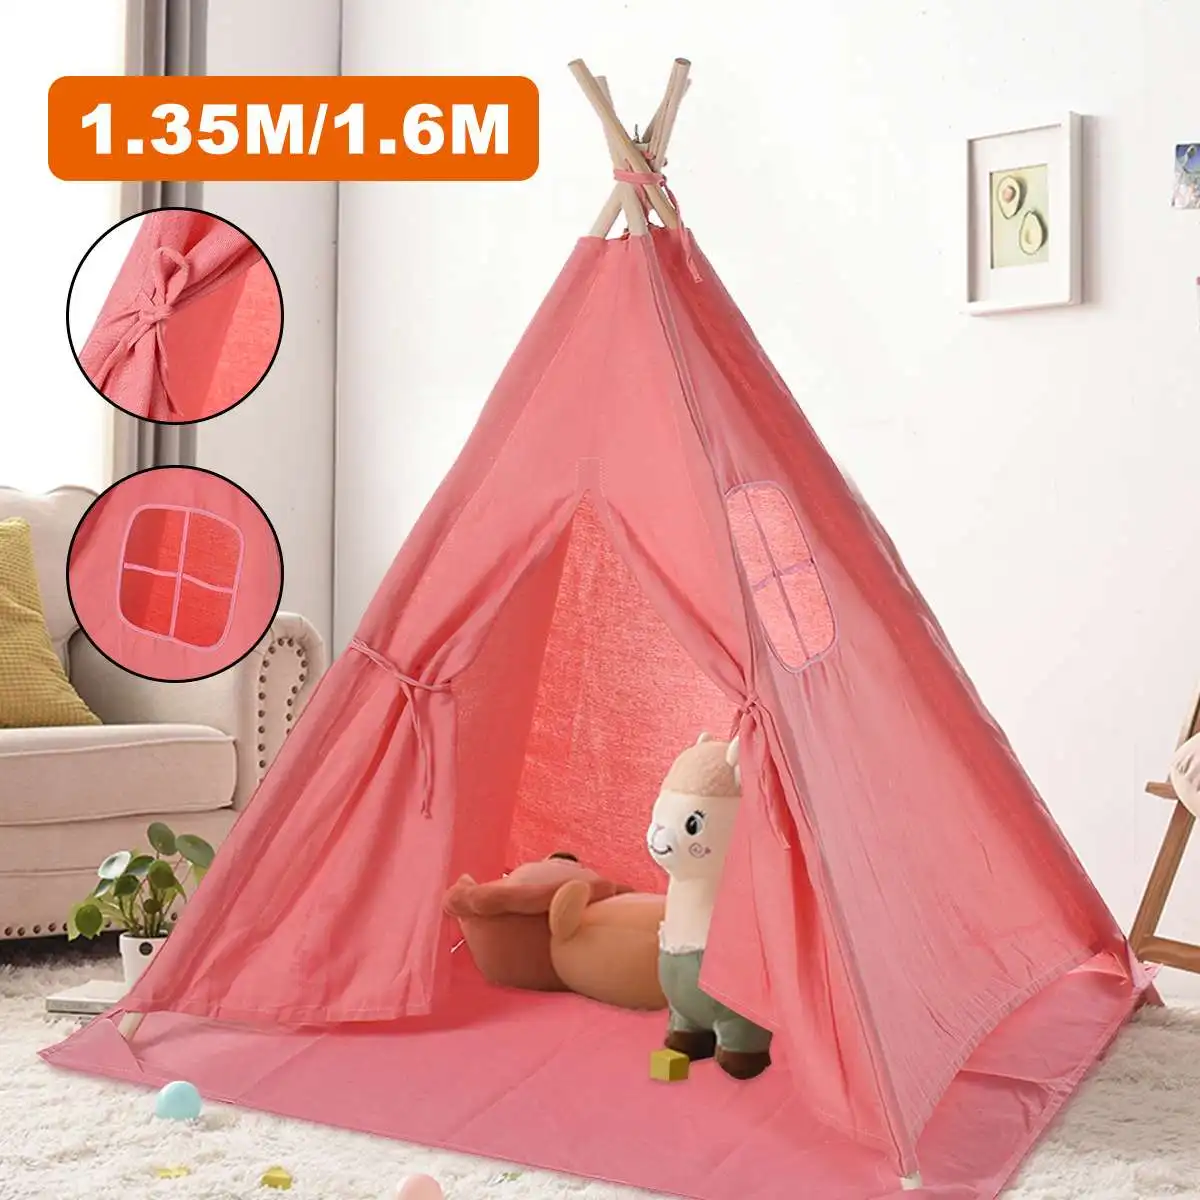 

Палатка-вигвам детская портативная, треугольная палатка с ковровым покрытием из хлопчатобумажной холщовой ткани для ролевых игр